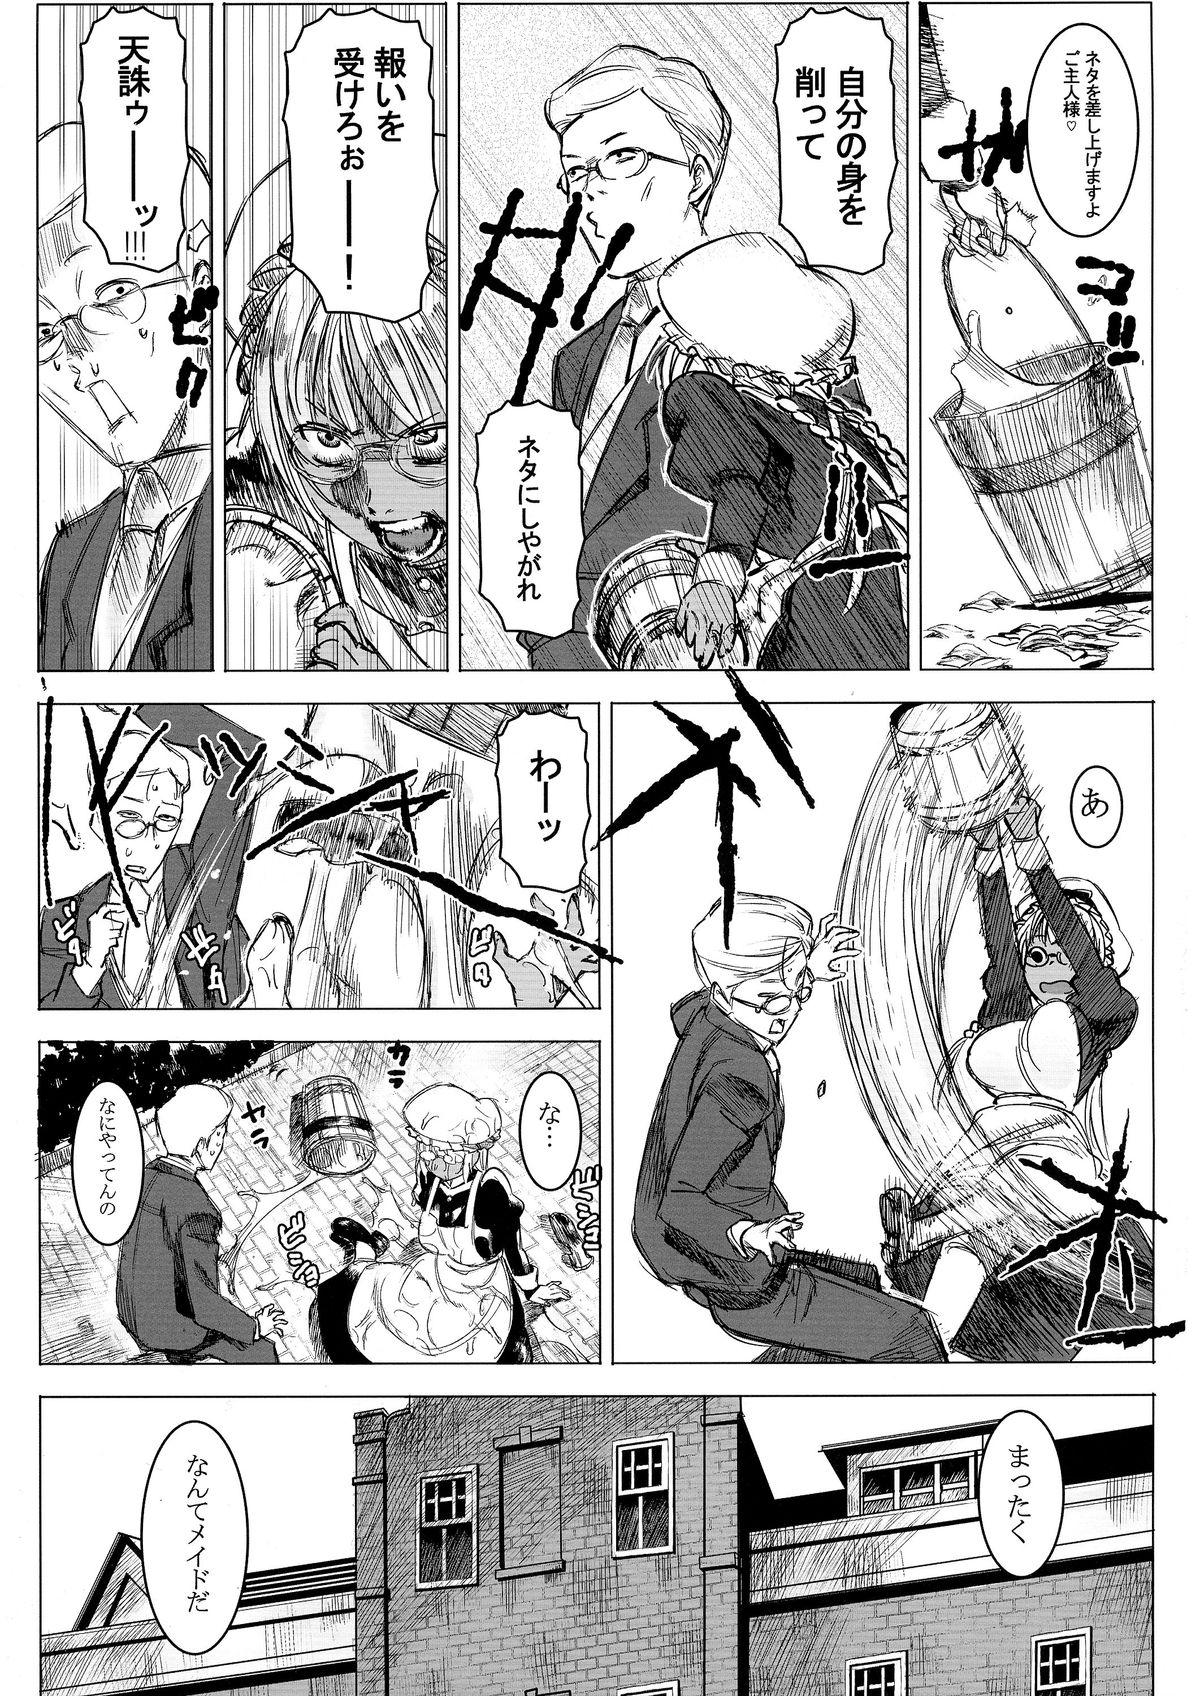 Old Man Kasshoku Kokumaro Funnyuu Maid! Baka ka!!! Gayporn - Page 6